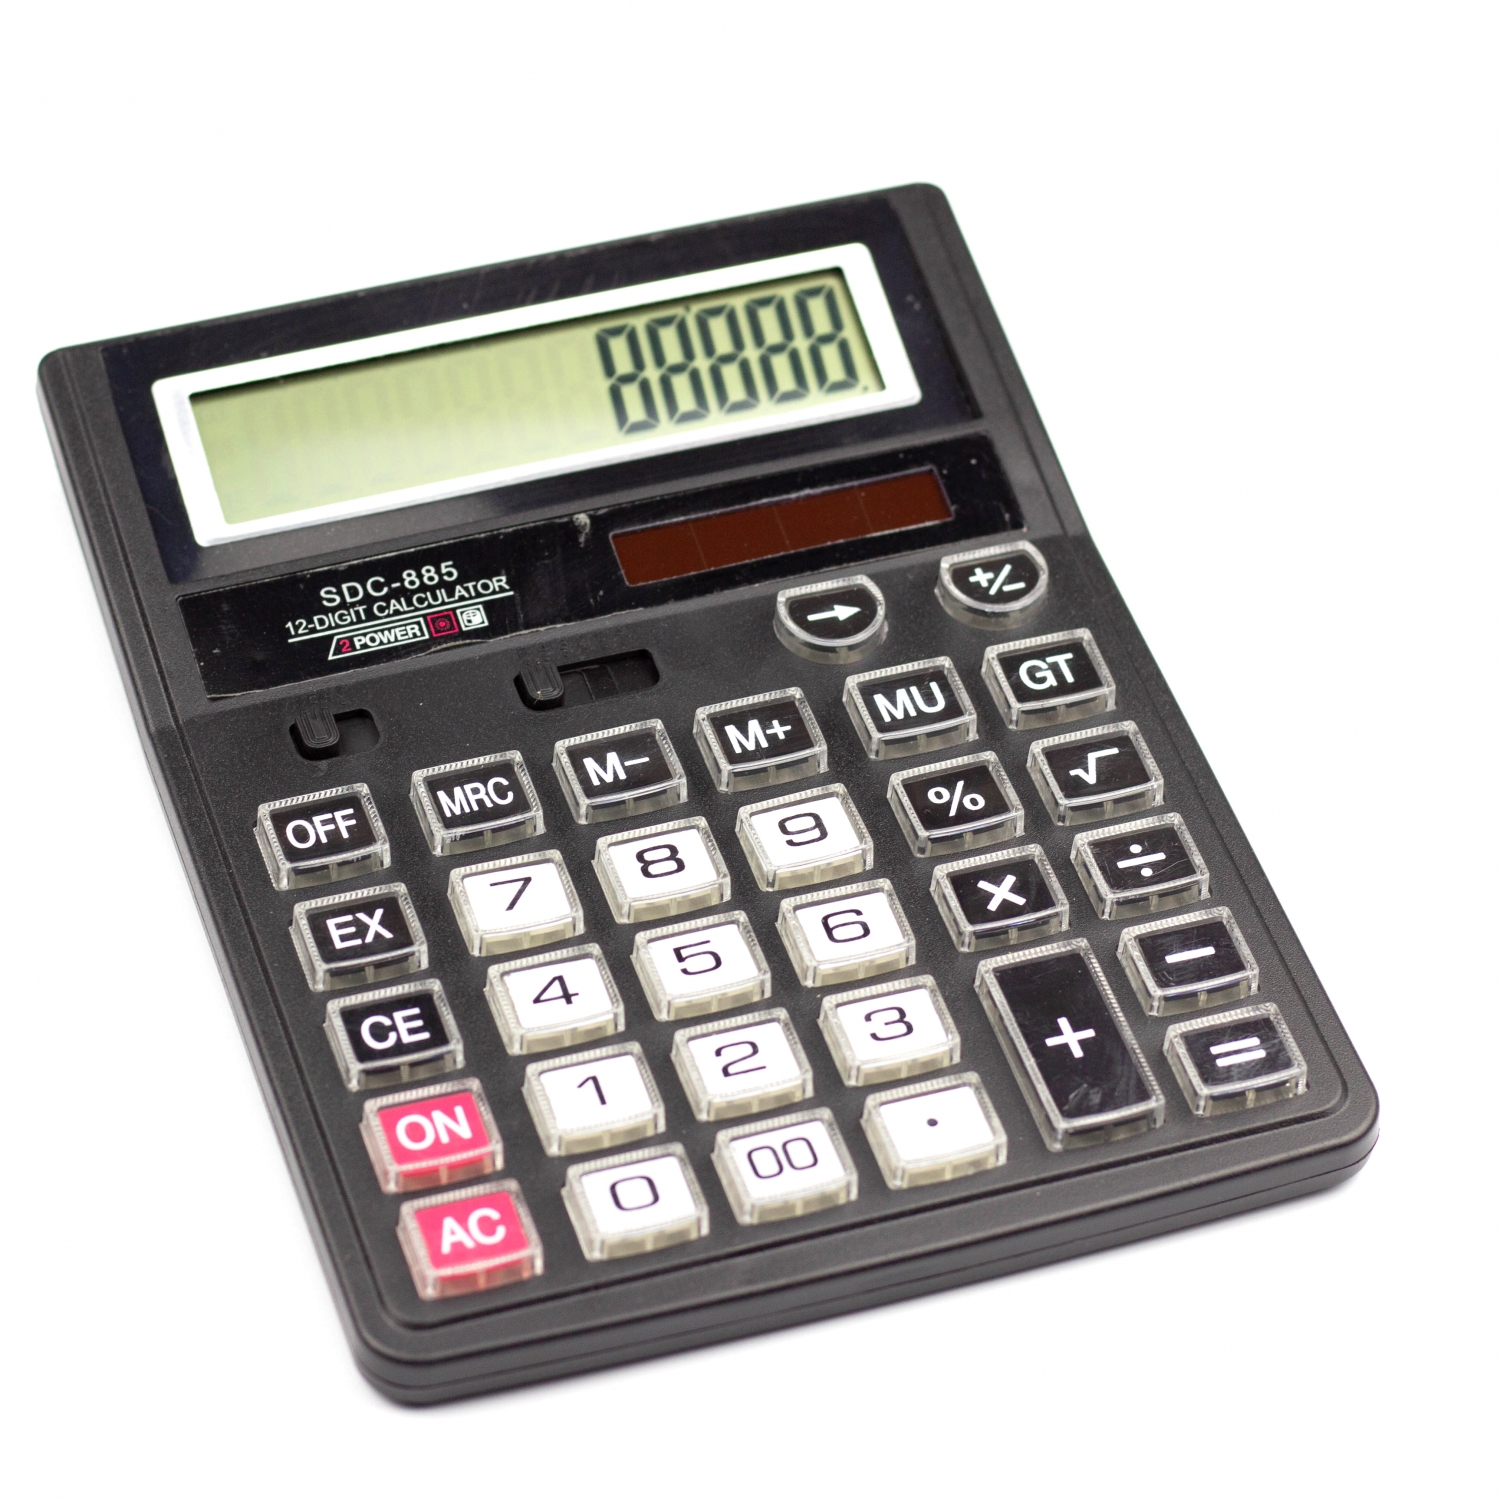 Калькулятор SDC-885 в коробке 12 разрядный AL6350 - Уфа 